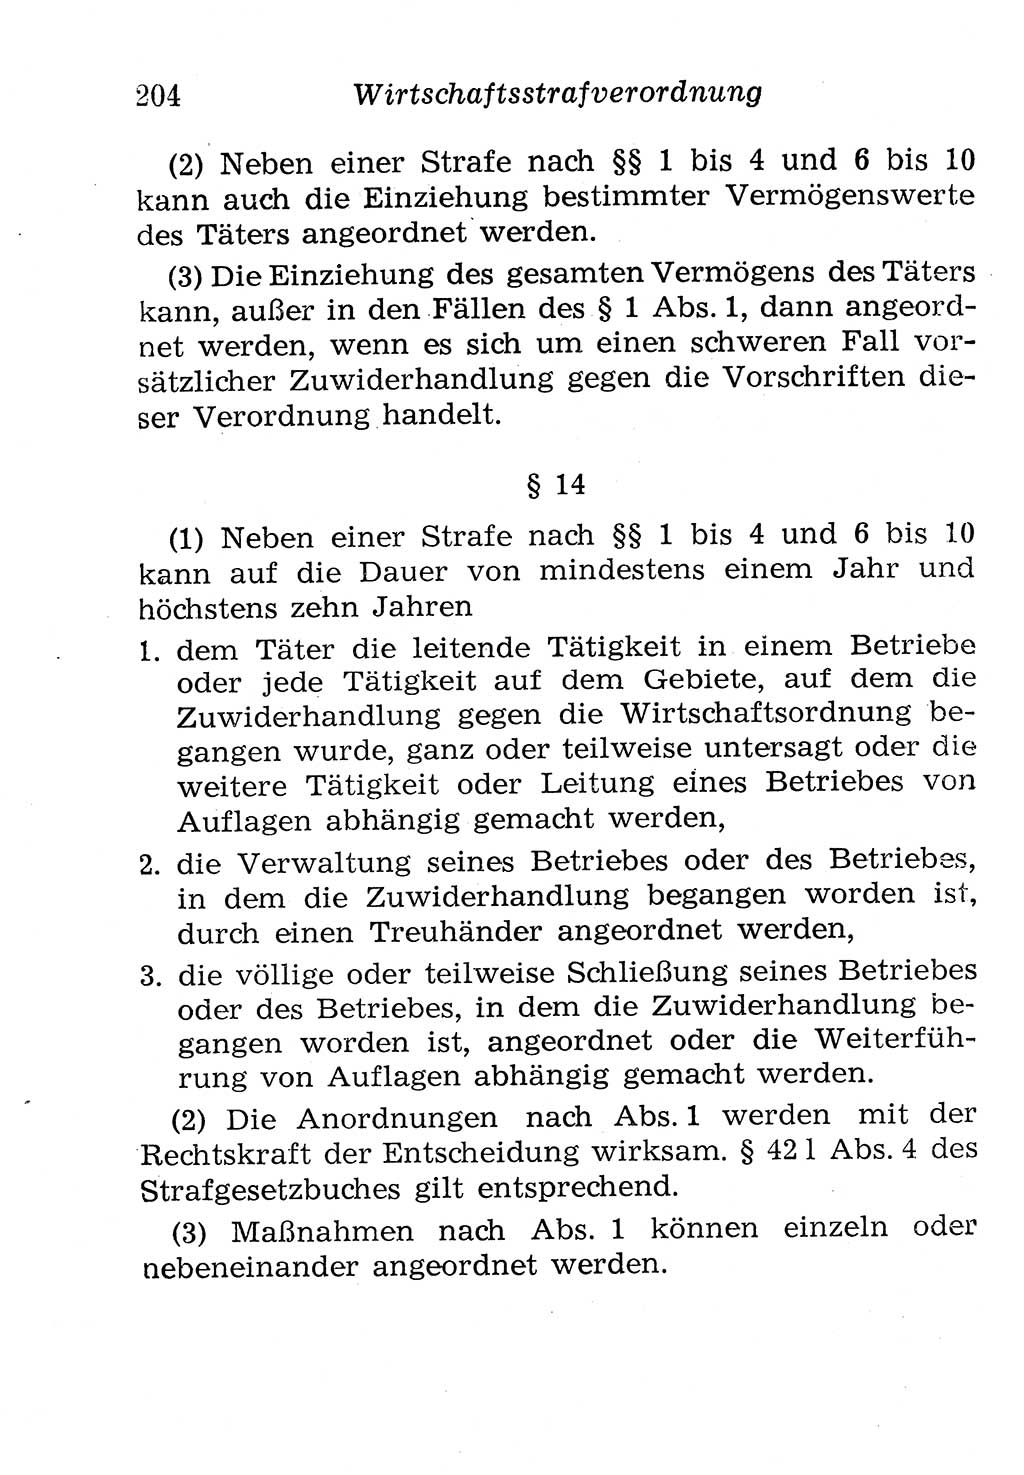 Strafgesetzbuch (StGB) und andere Strafgesetze [Deutsche Demokratische Republik (DDR)] 1958, Seite 204 (StGB Strafges. DDR 1958, S. 204)